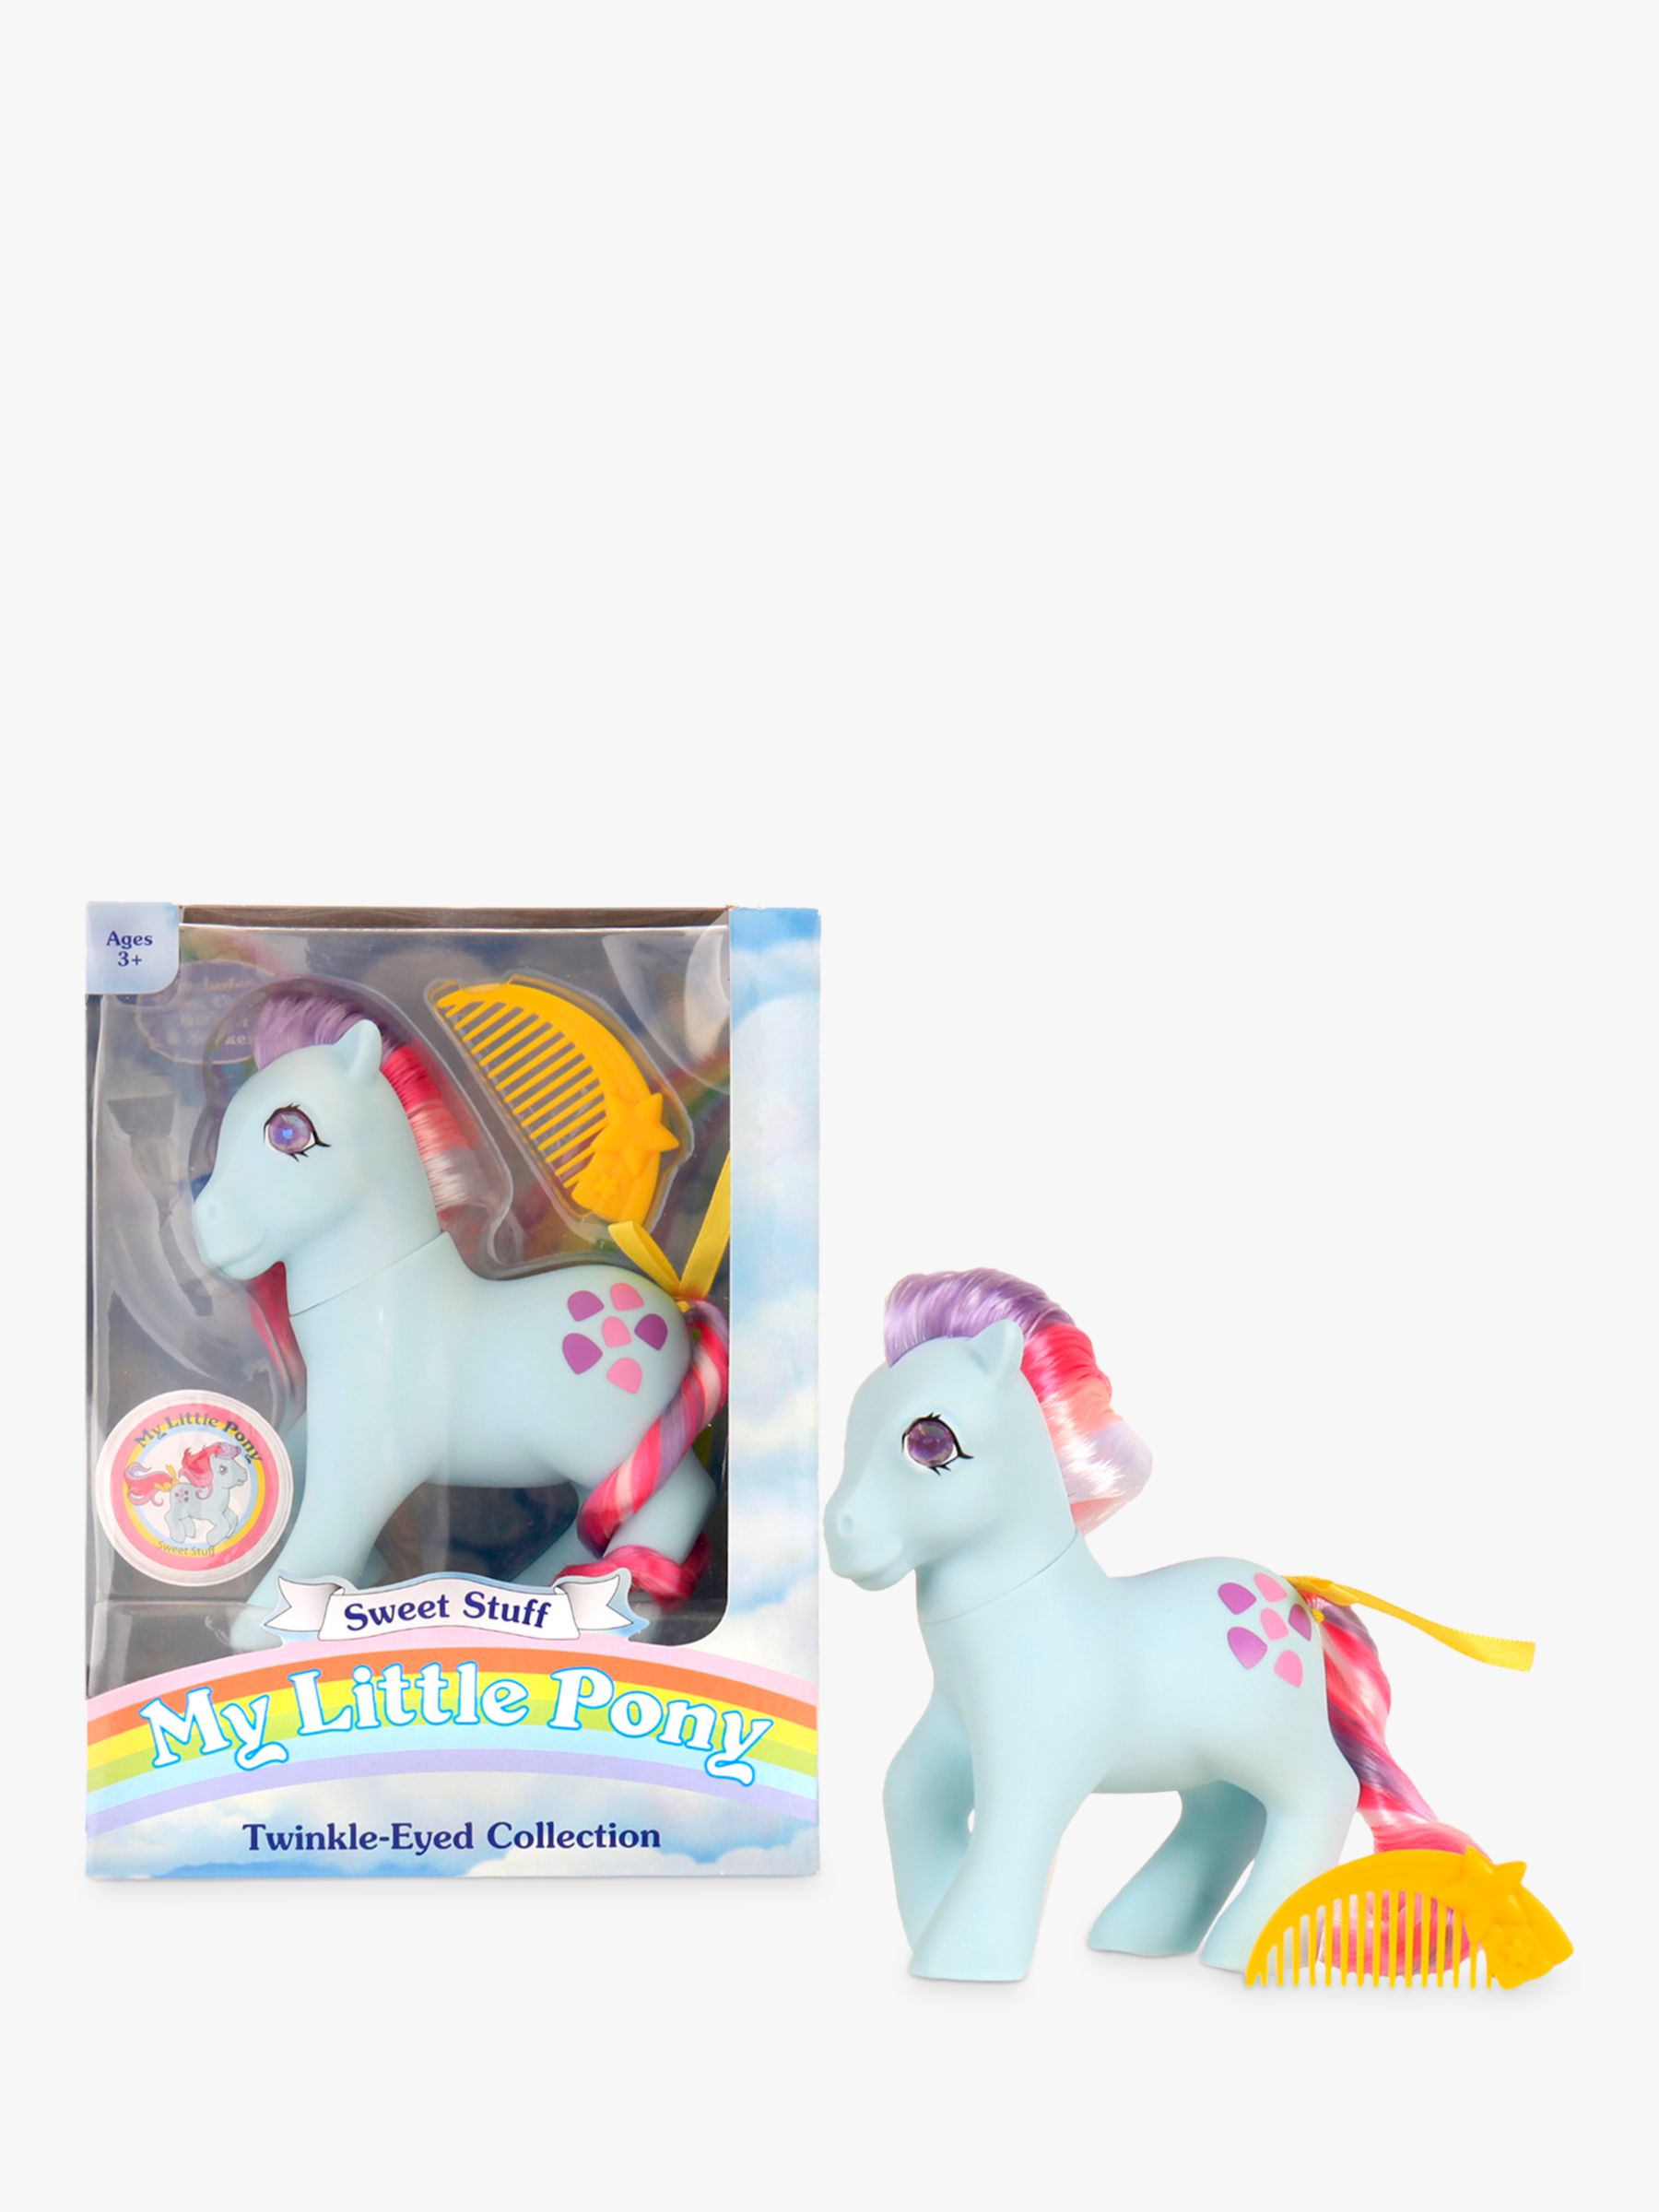 Watch My Little Pony: Twinkle Wish Adventure Streaming Online